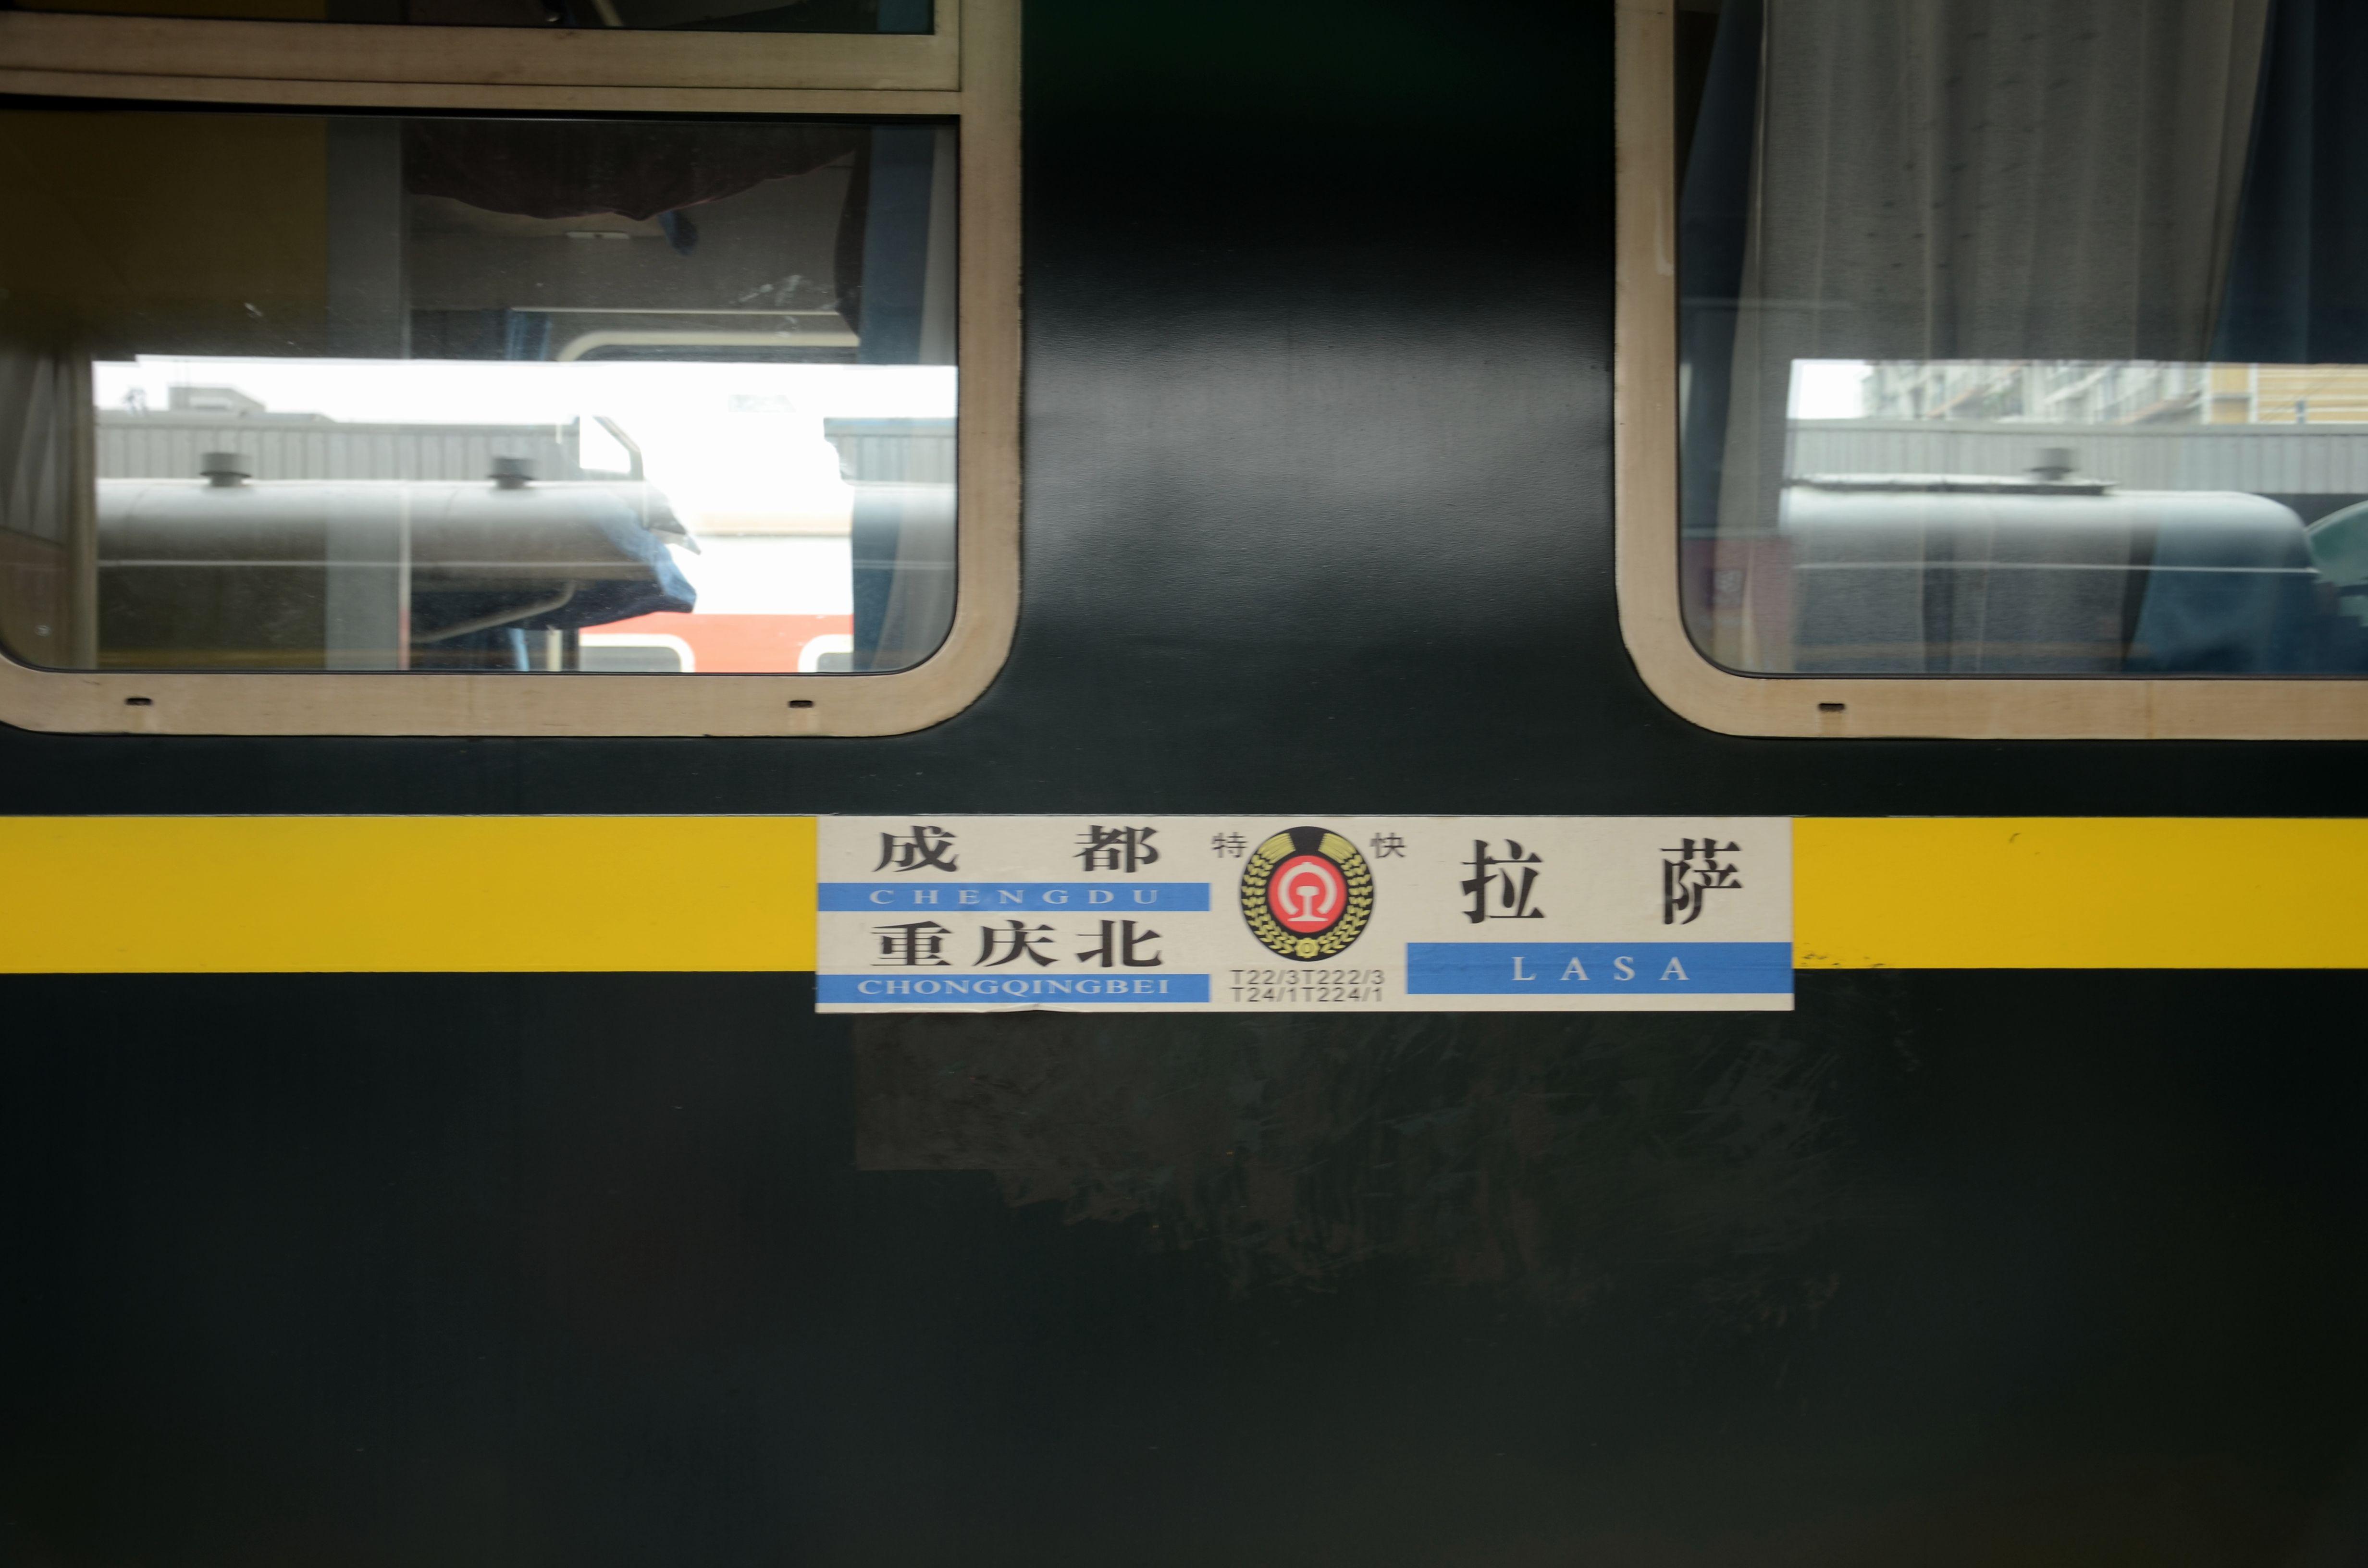 这种25t是为了青藏铁路而设计,有bsp和国产两种版本,其中bsp目前在z21